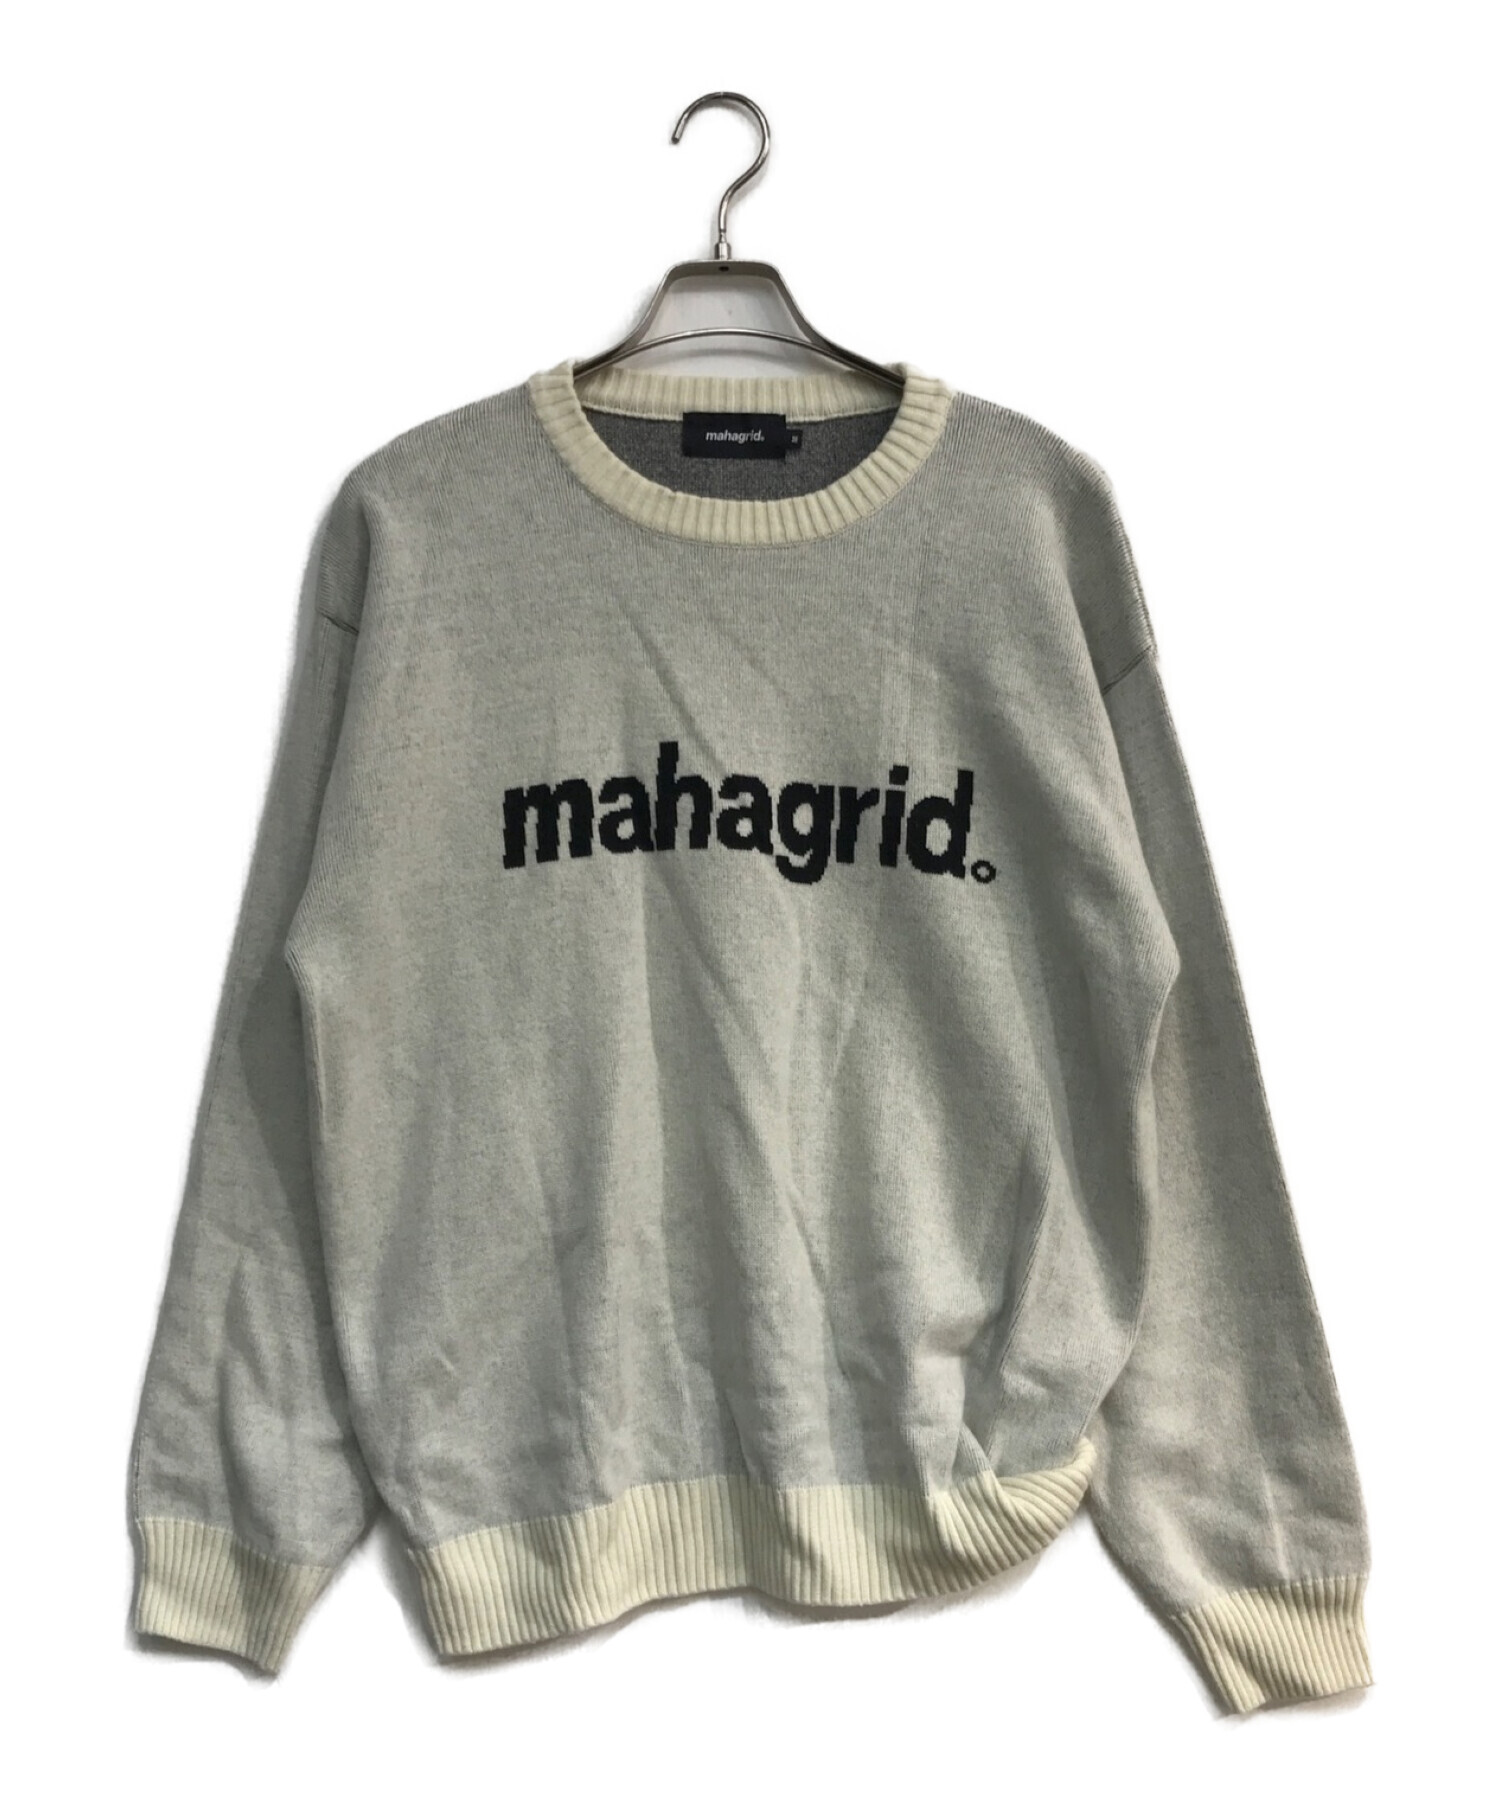 mahagrid (マハグリッド) ベーシックロゴニット ホワイト サイズ:M